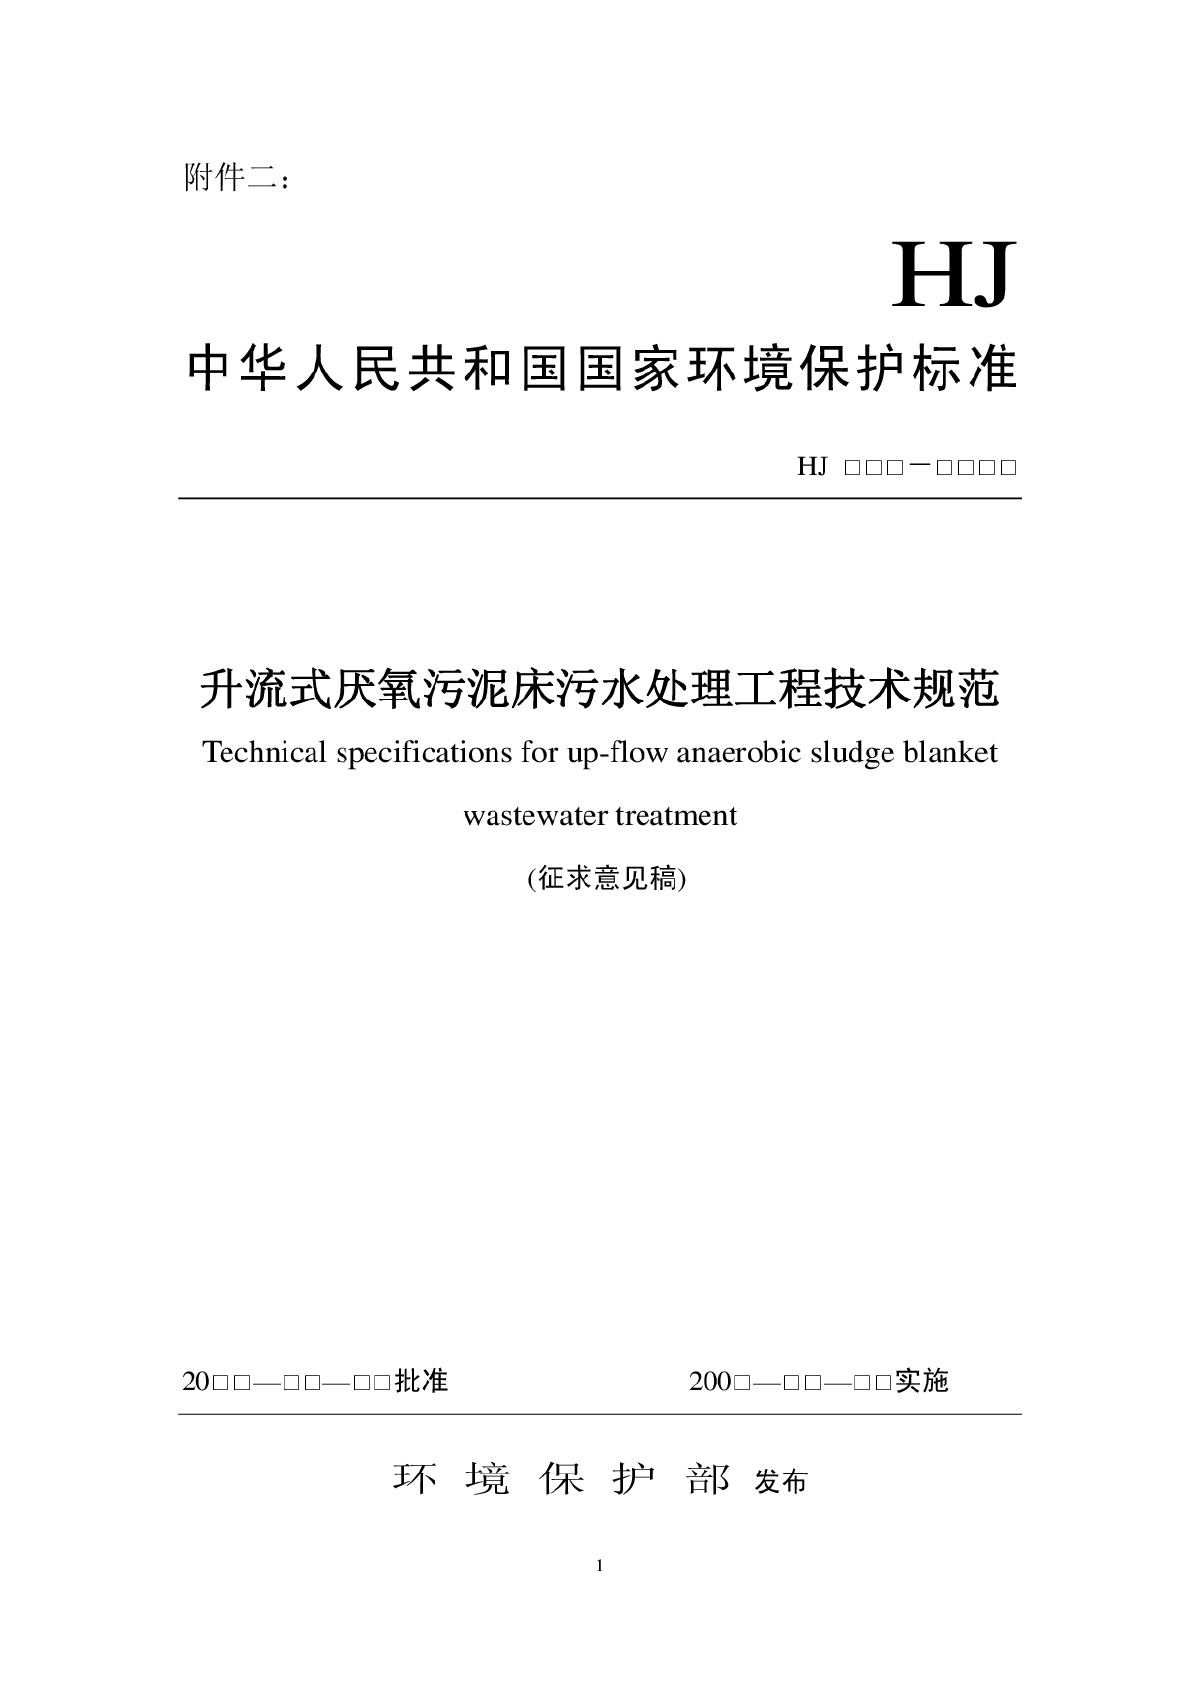 升流式厌氧污泥床污水处理工程技术规范2010.pdf